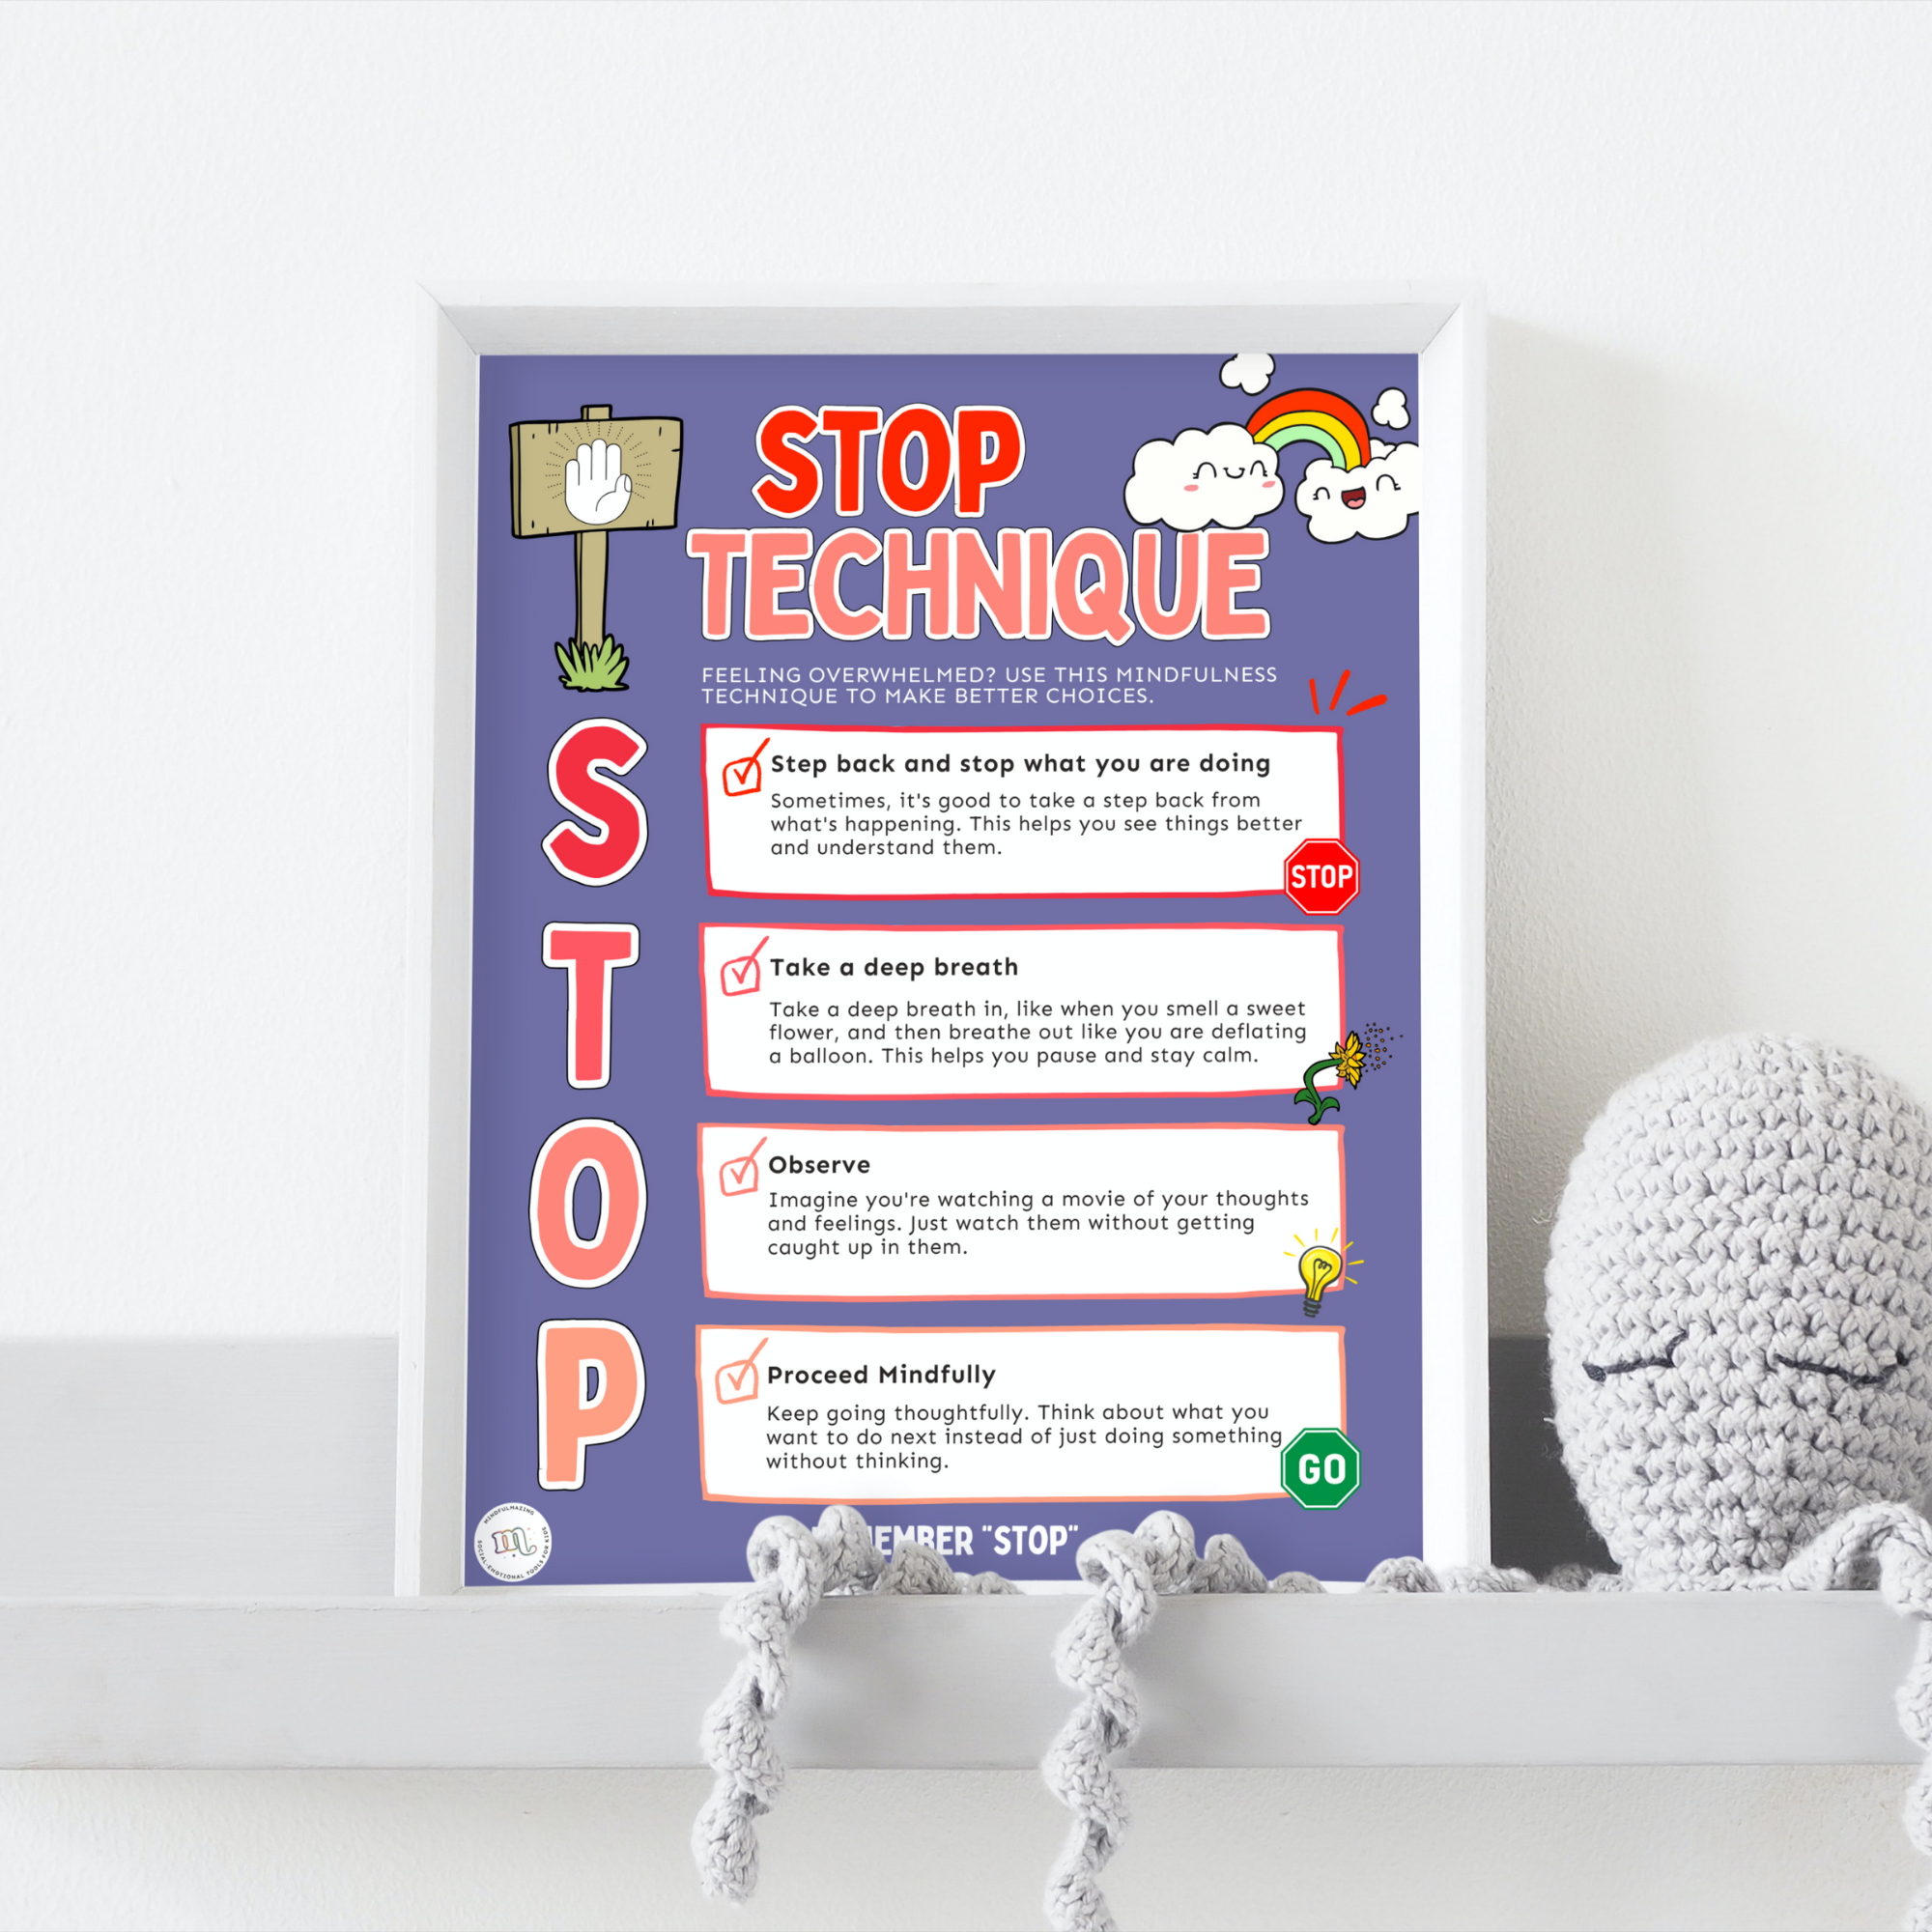 STOP & RAIN Technique Poster - Purple Version